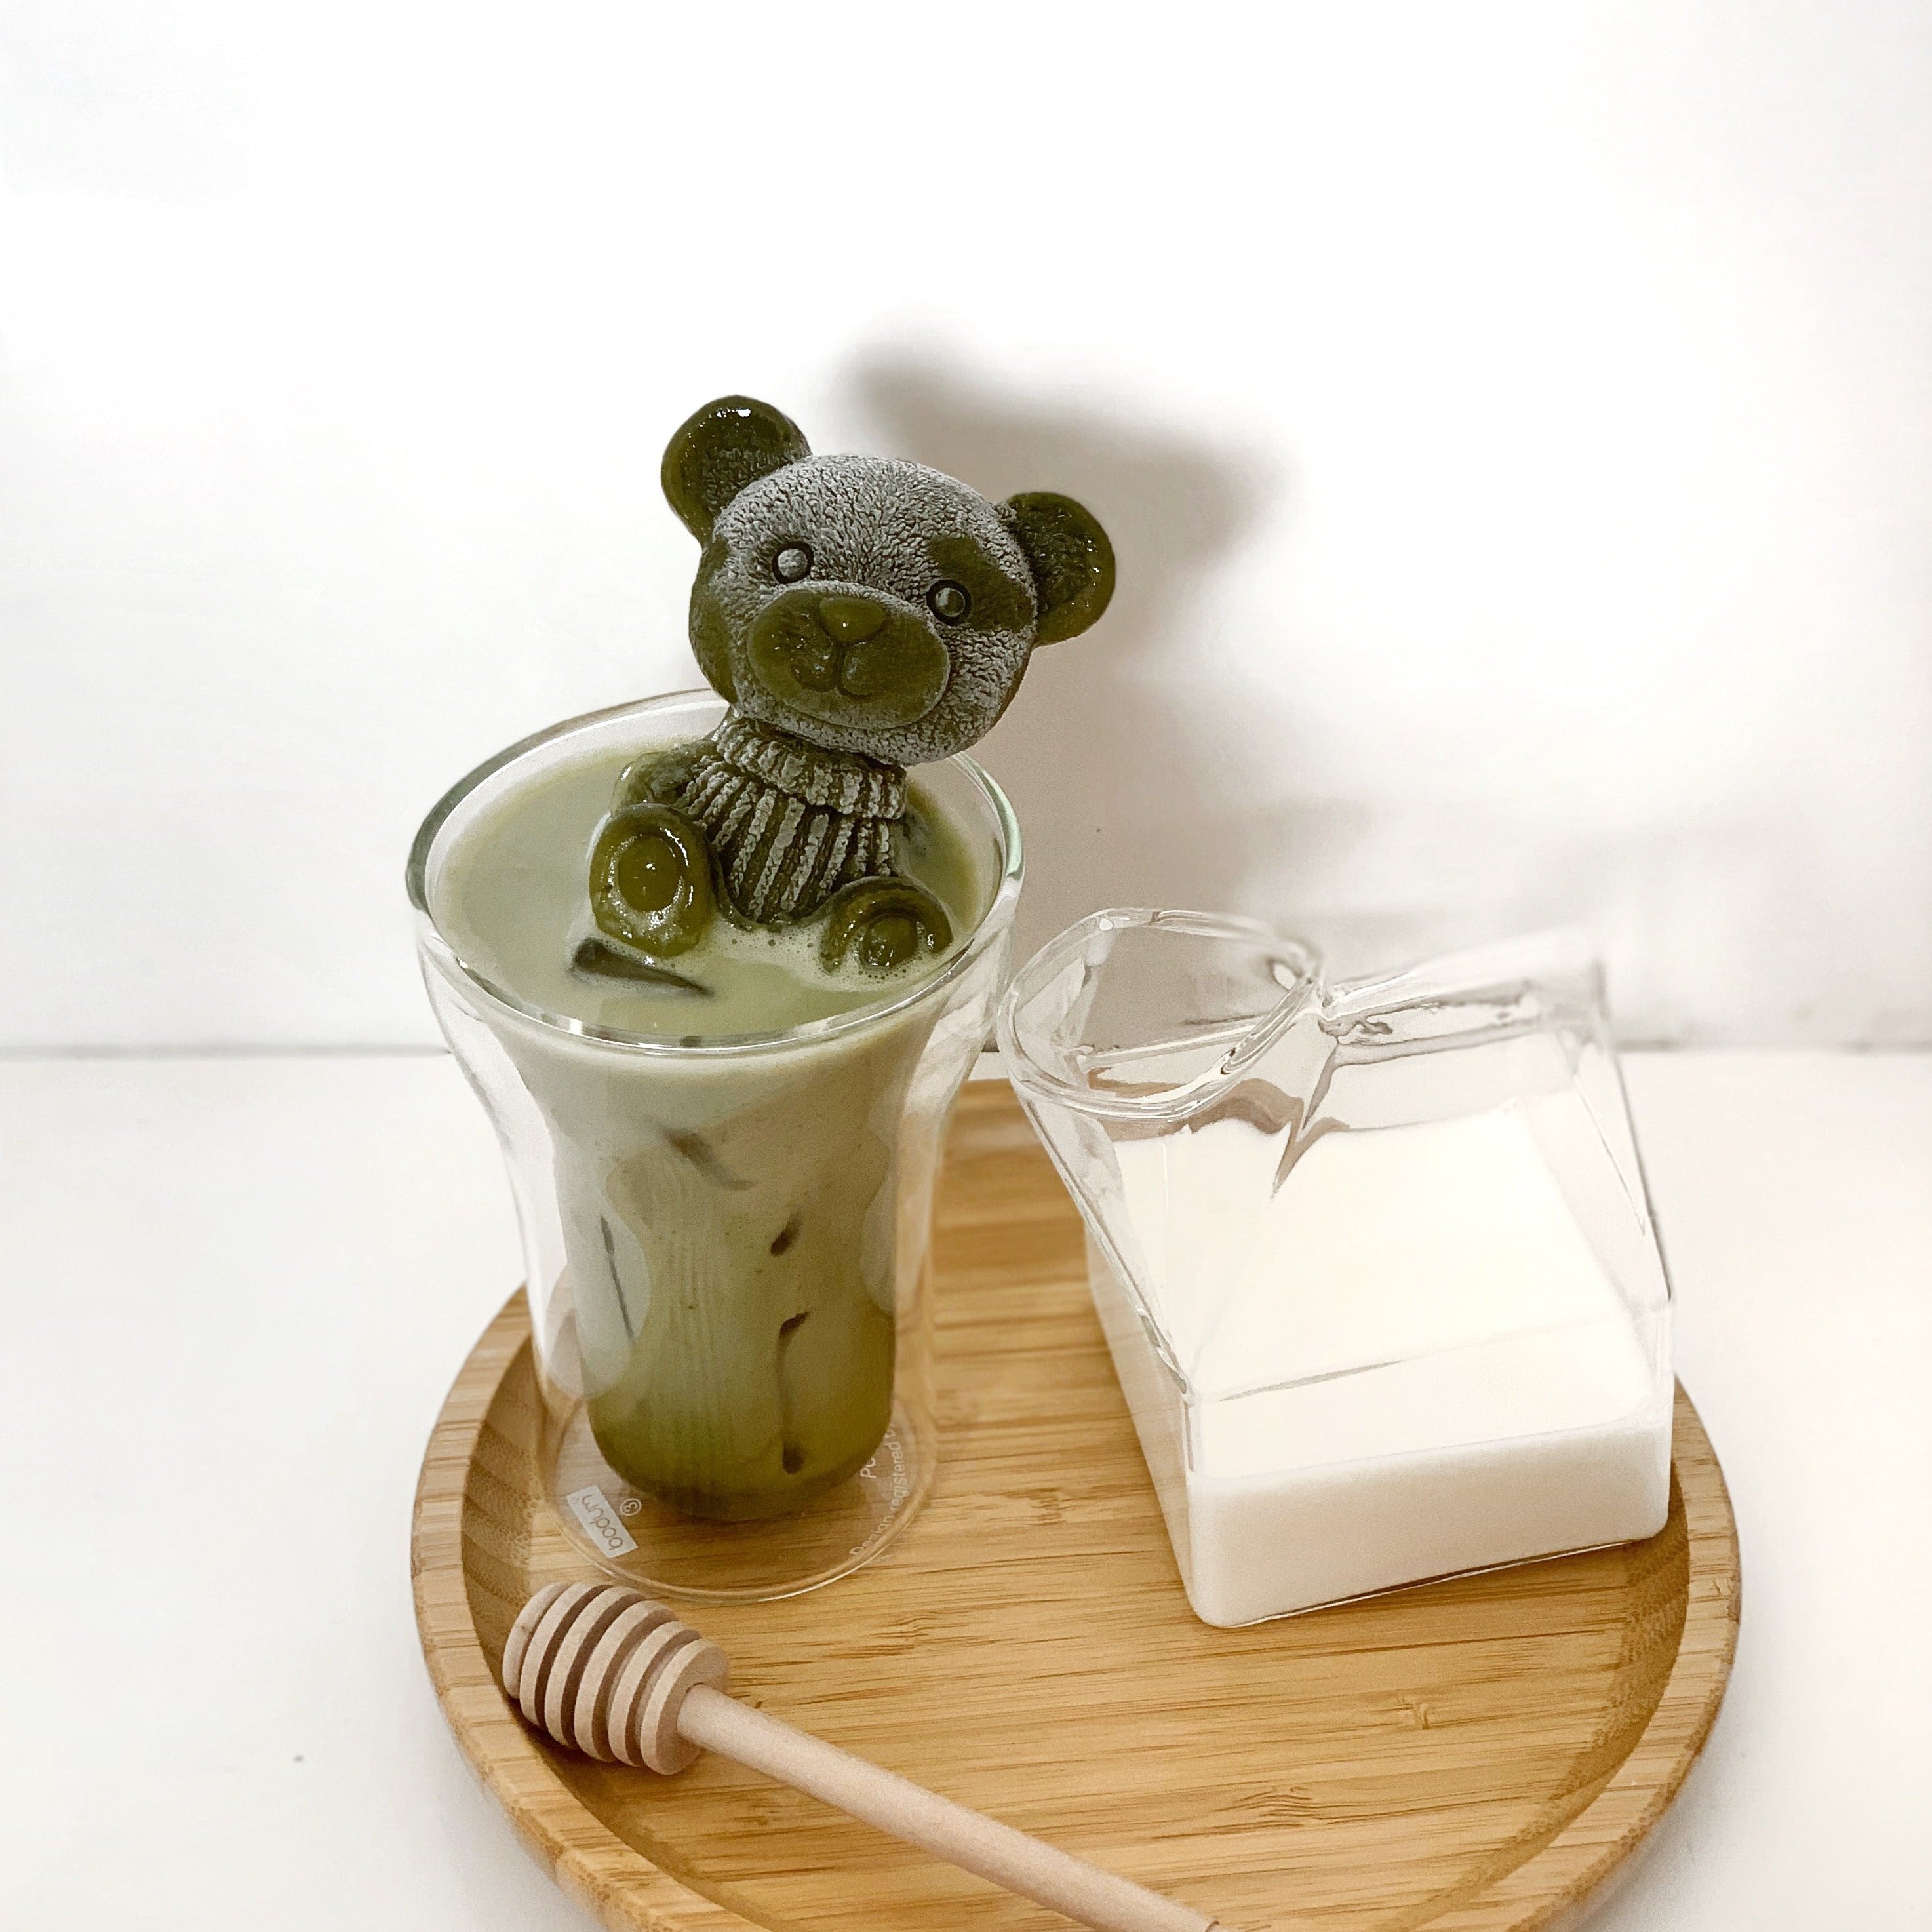 Cute Kawaii Teddy Bear 3D Ice Cube Silicone Mold - Peachymart